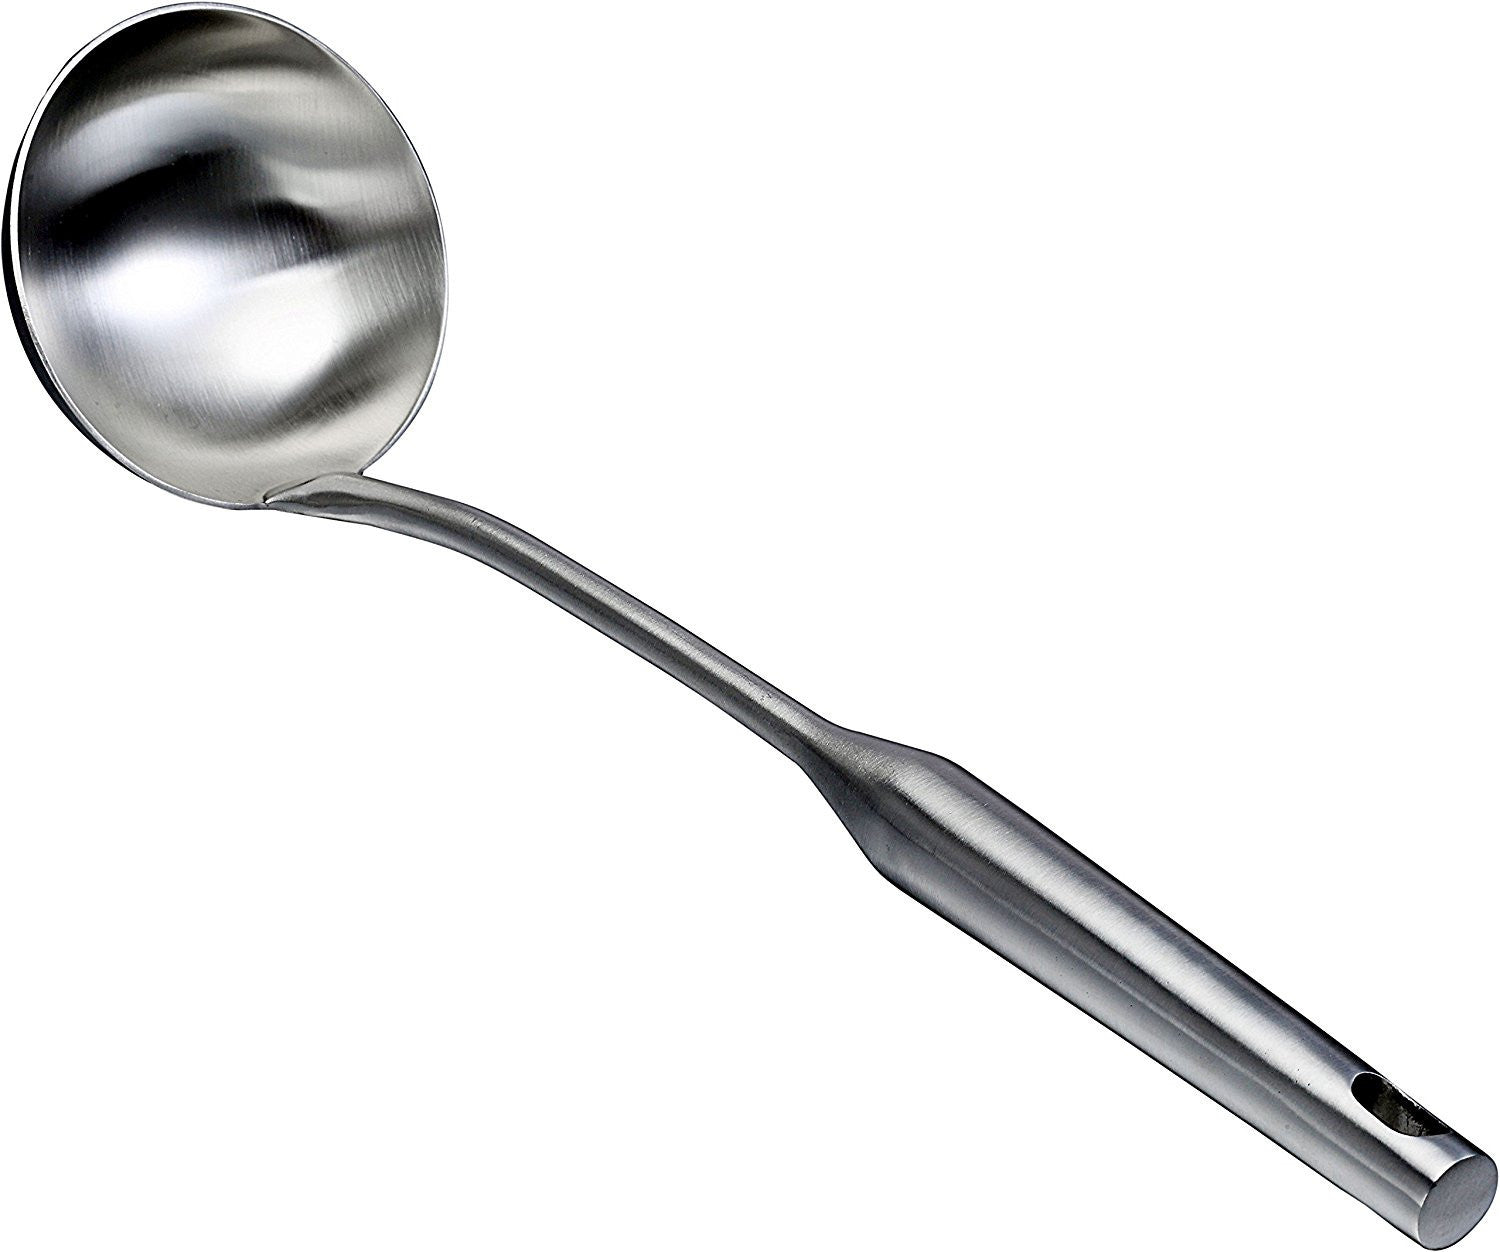 long handle soup spoon Kitchen Ladle Kitchen Wares Big Ladle Spoon Punch